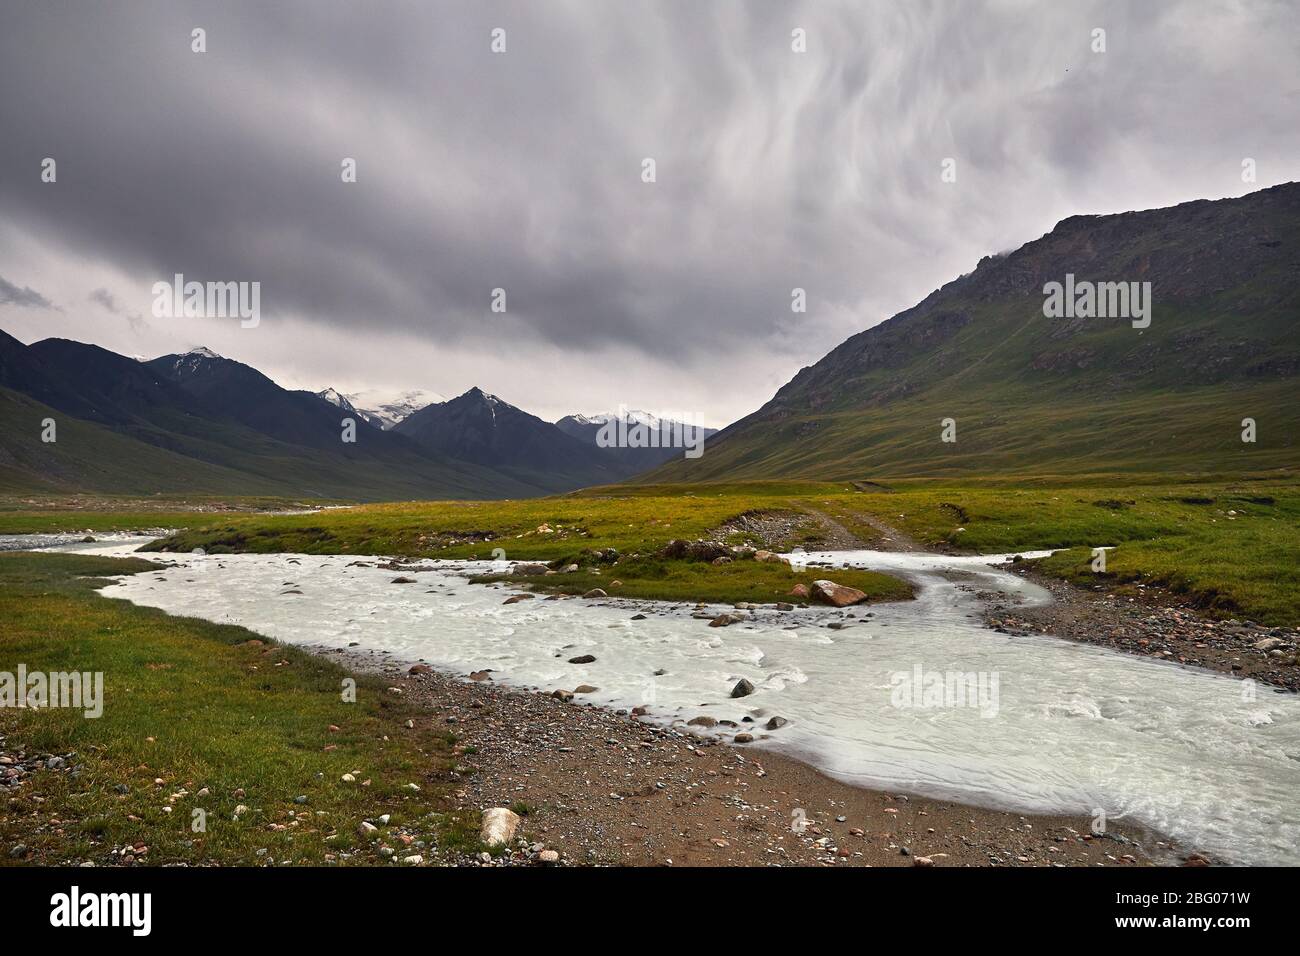 River im Berg Tal bei bewölkten bewölkten Himmel in Kirgisistan Stockfoto